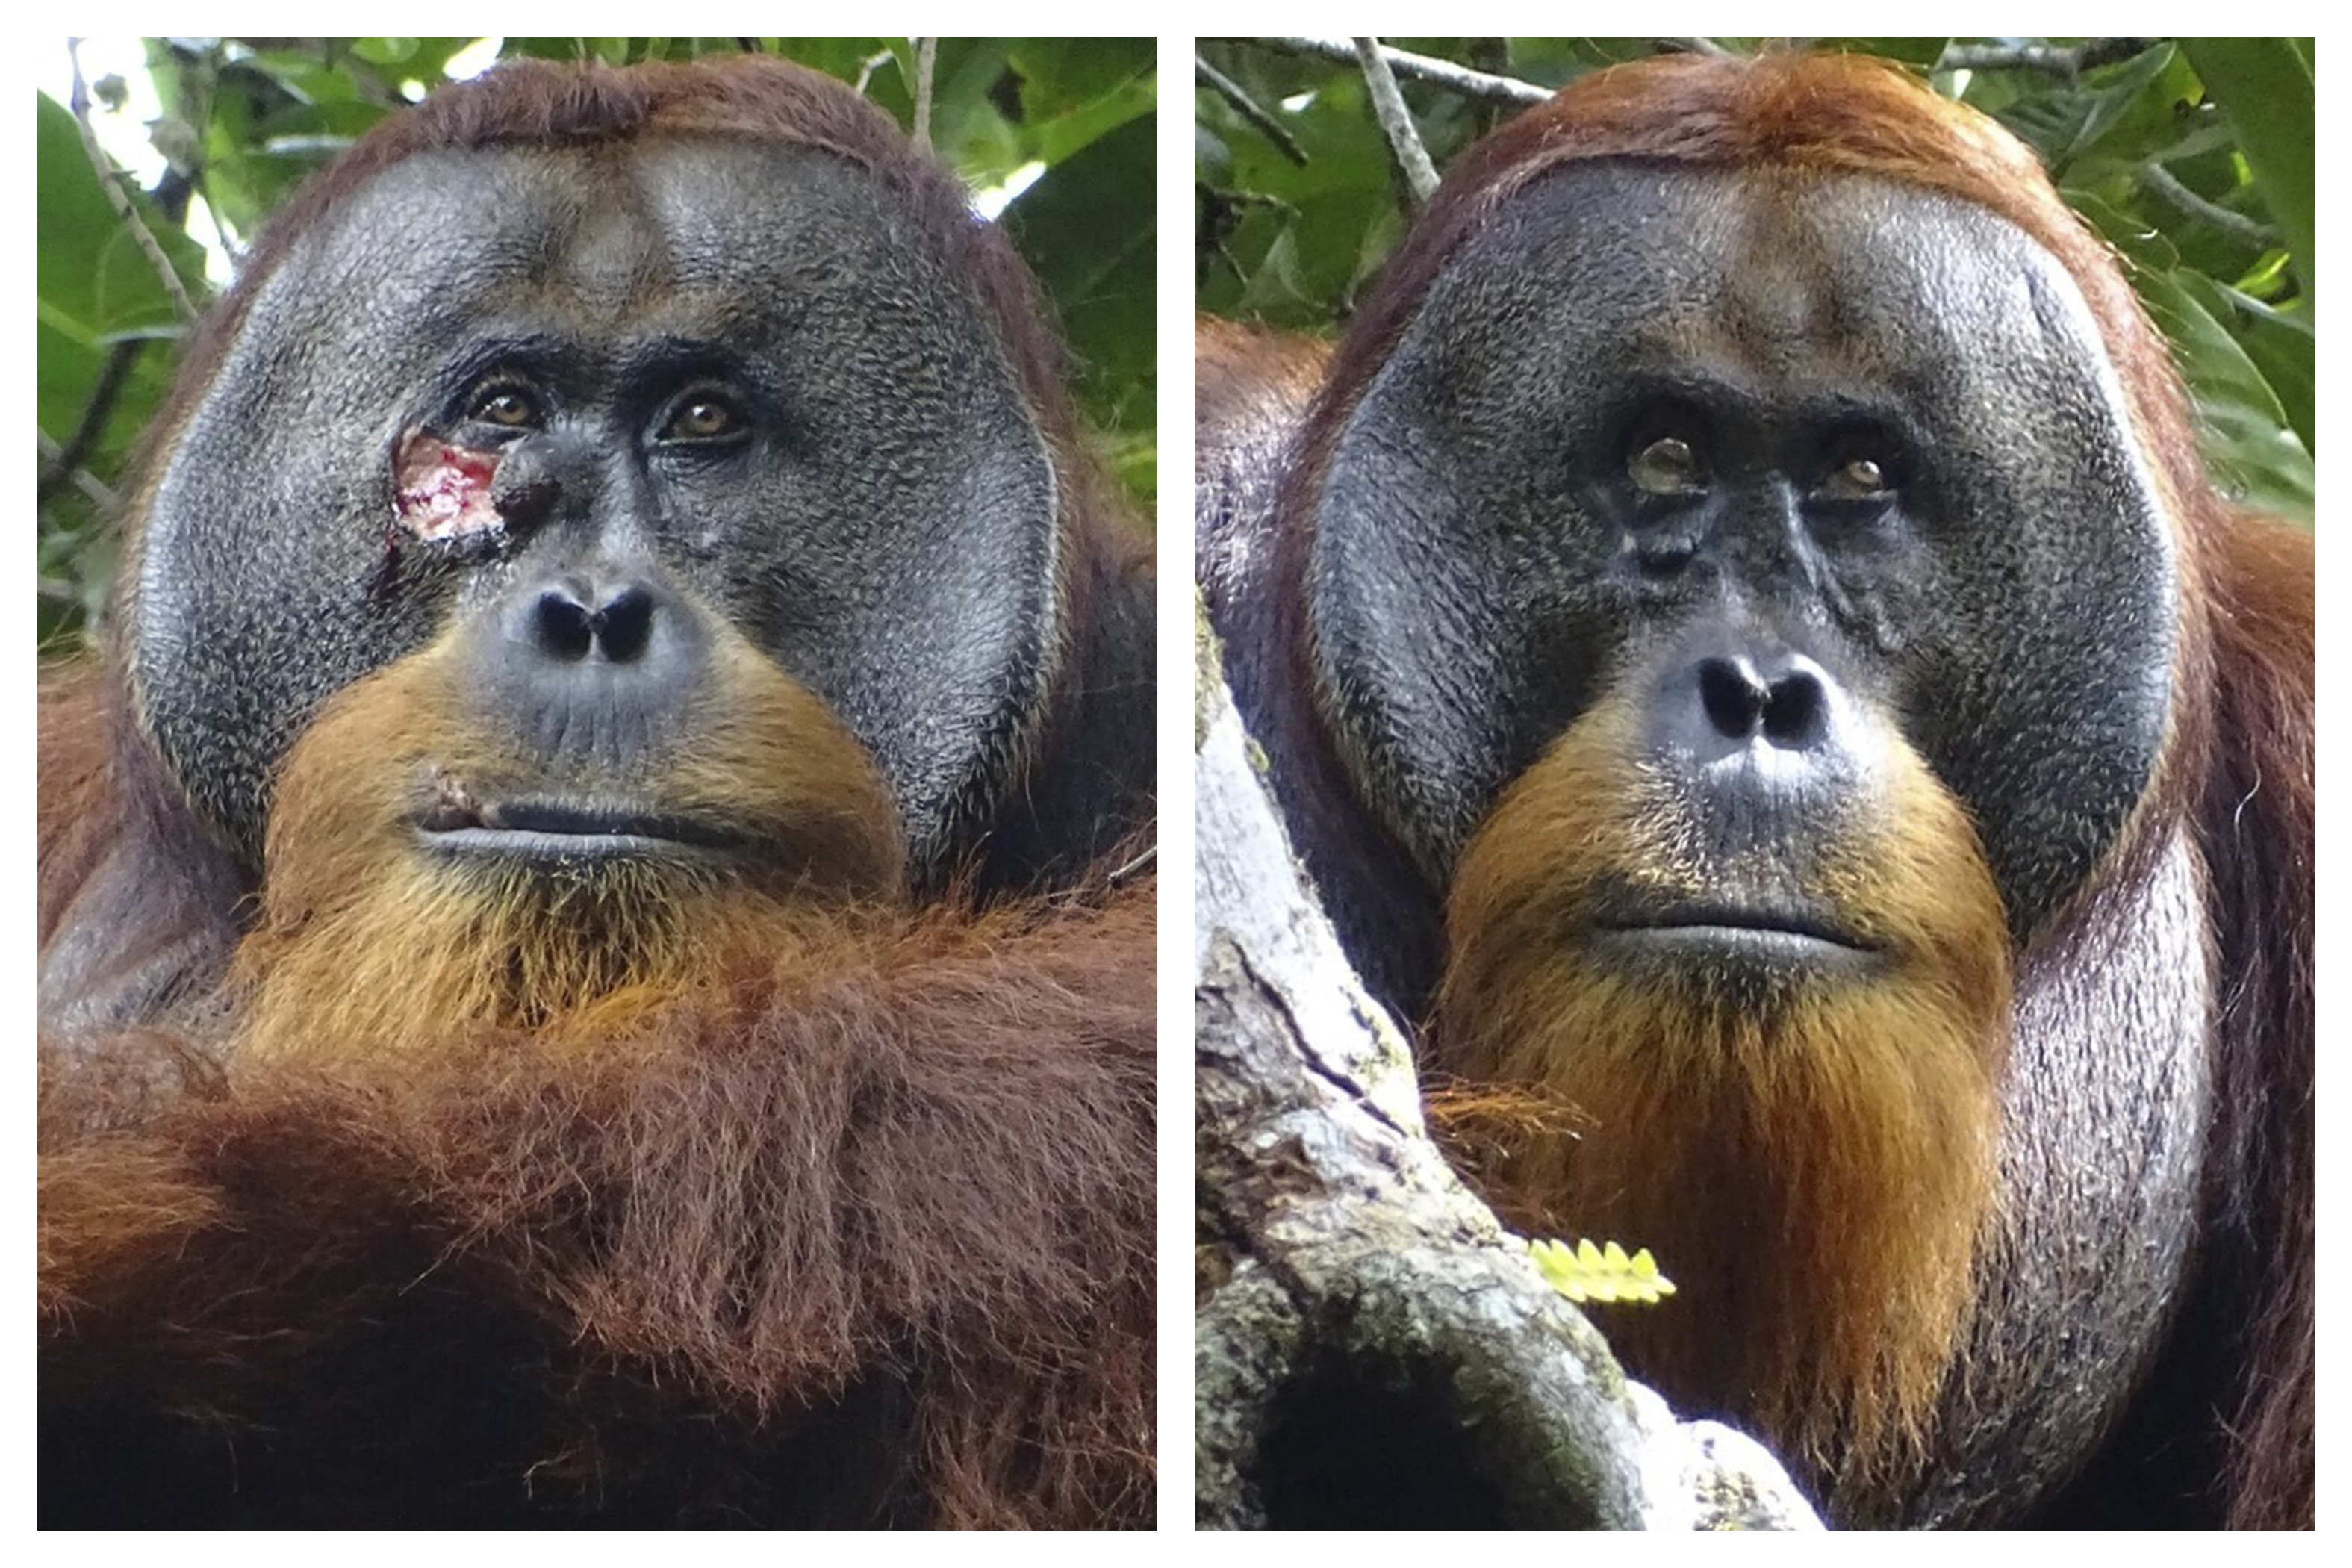 Observan por primera vez a un orangután curándose una herida con plantas medicinales